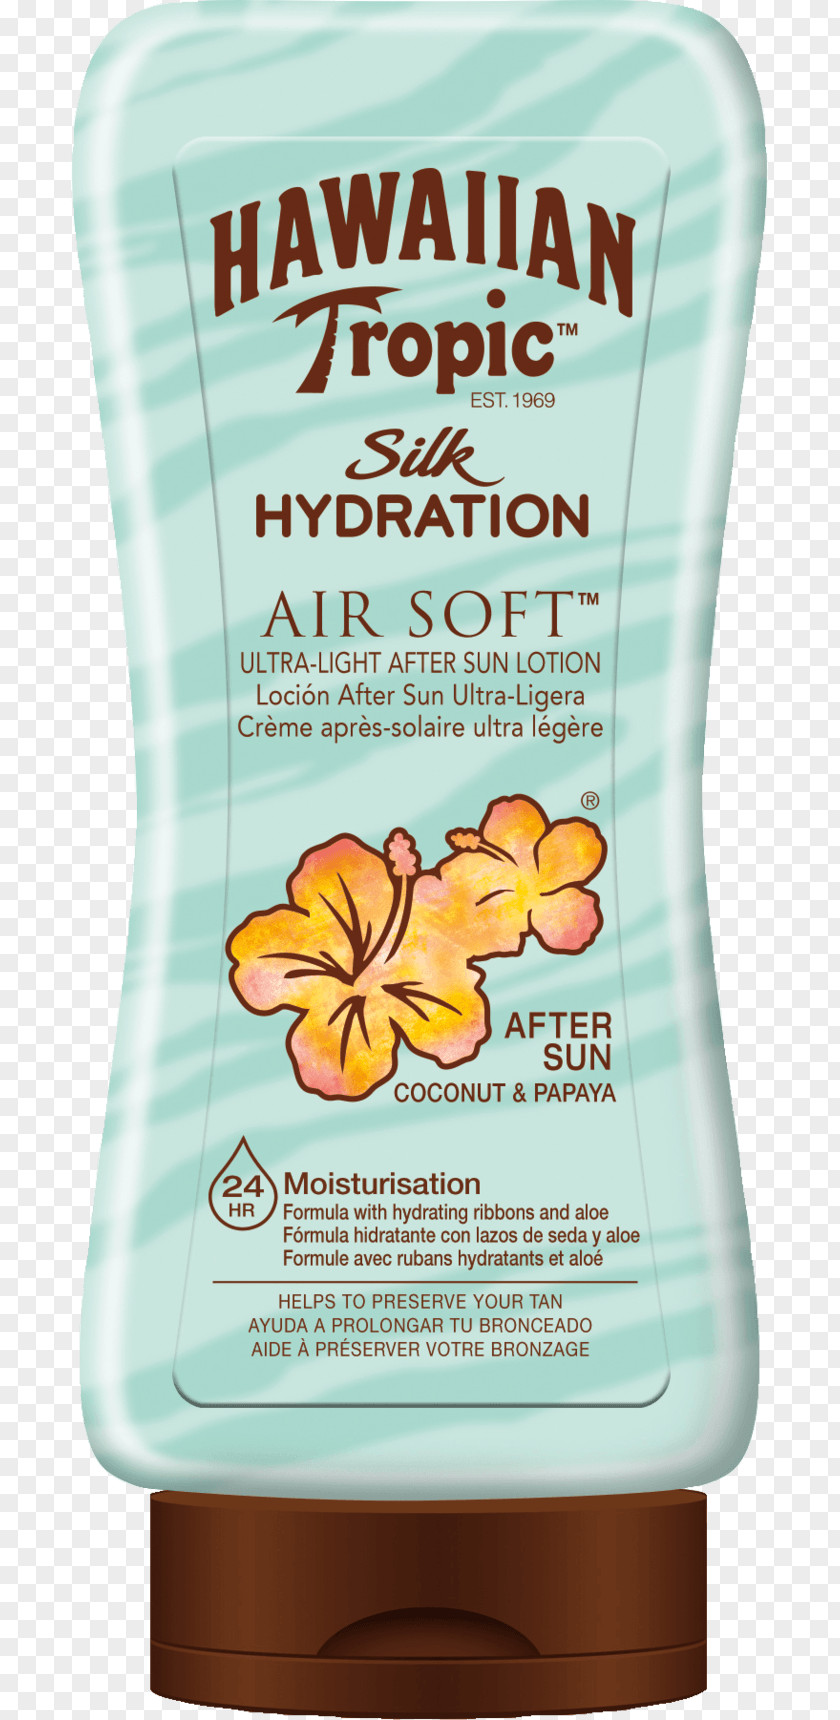 Sun Lotion Sunscreen Hawaiian Tropic Silk Hydration After Lip Balm PNG